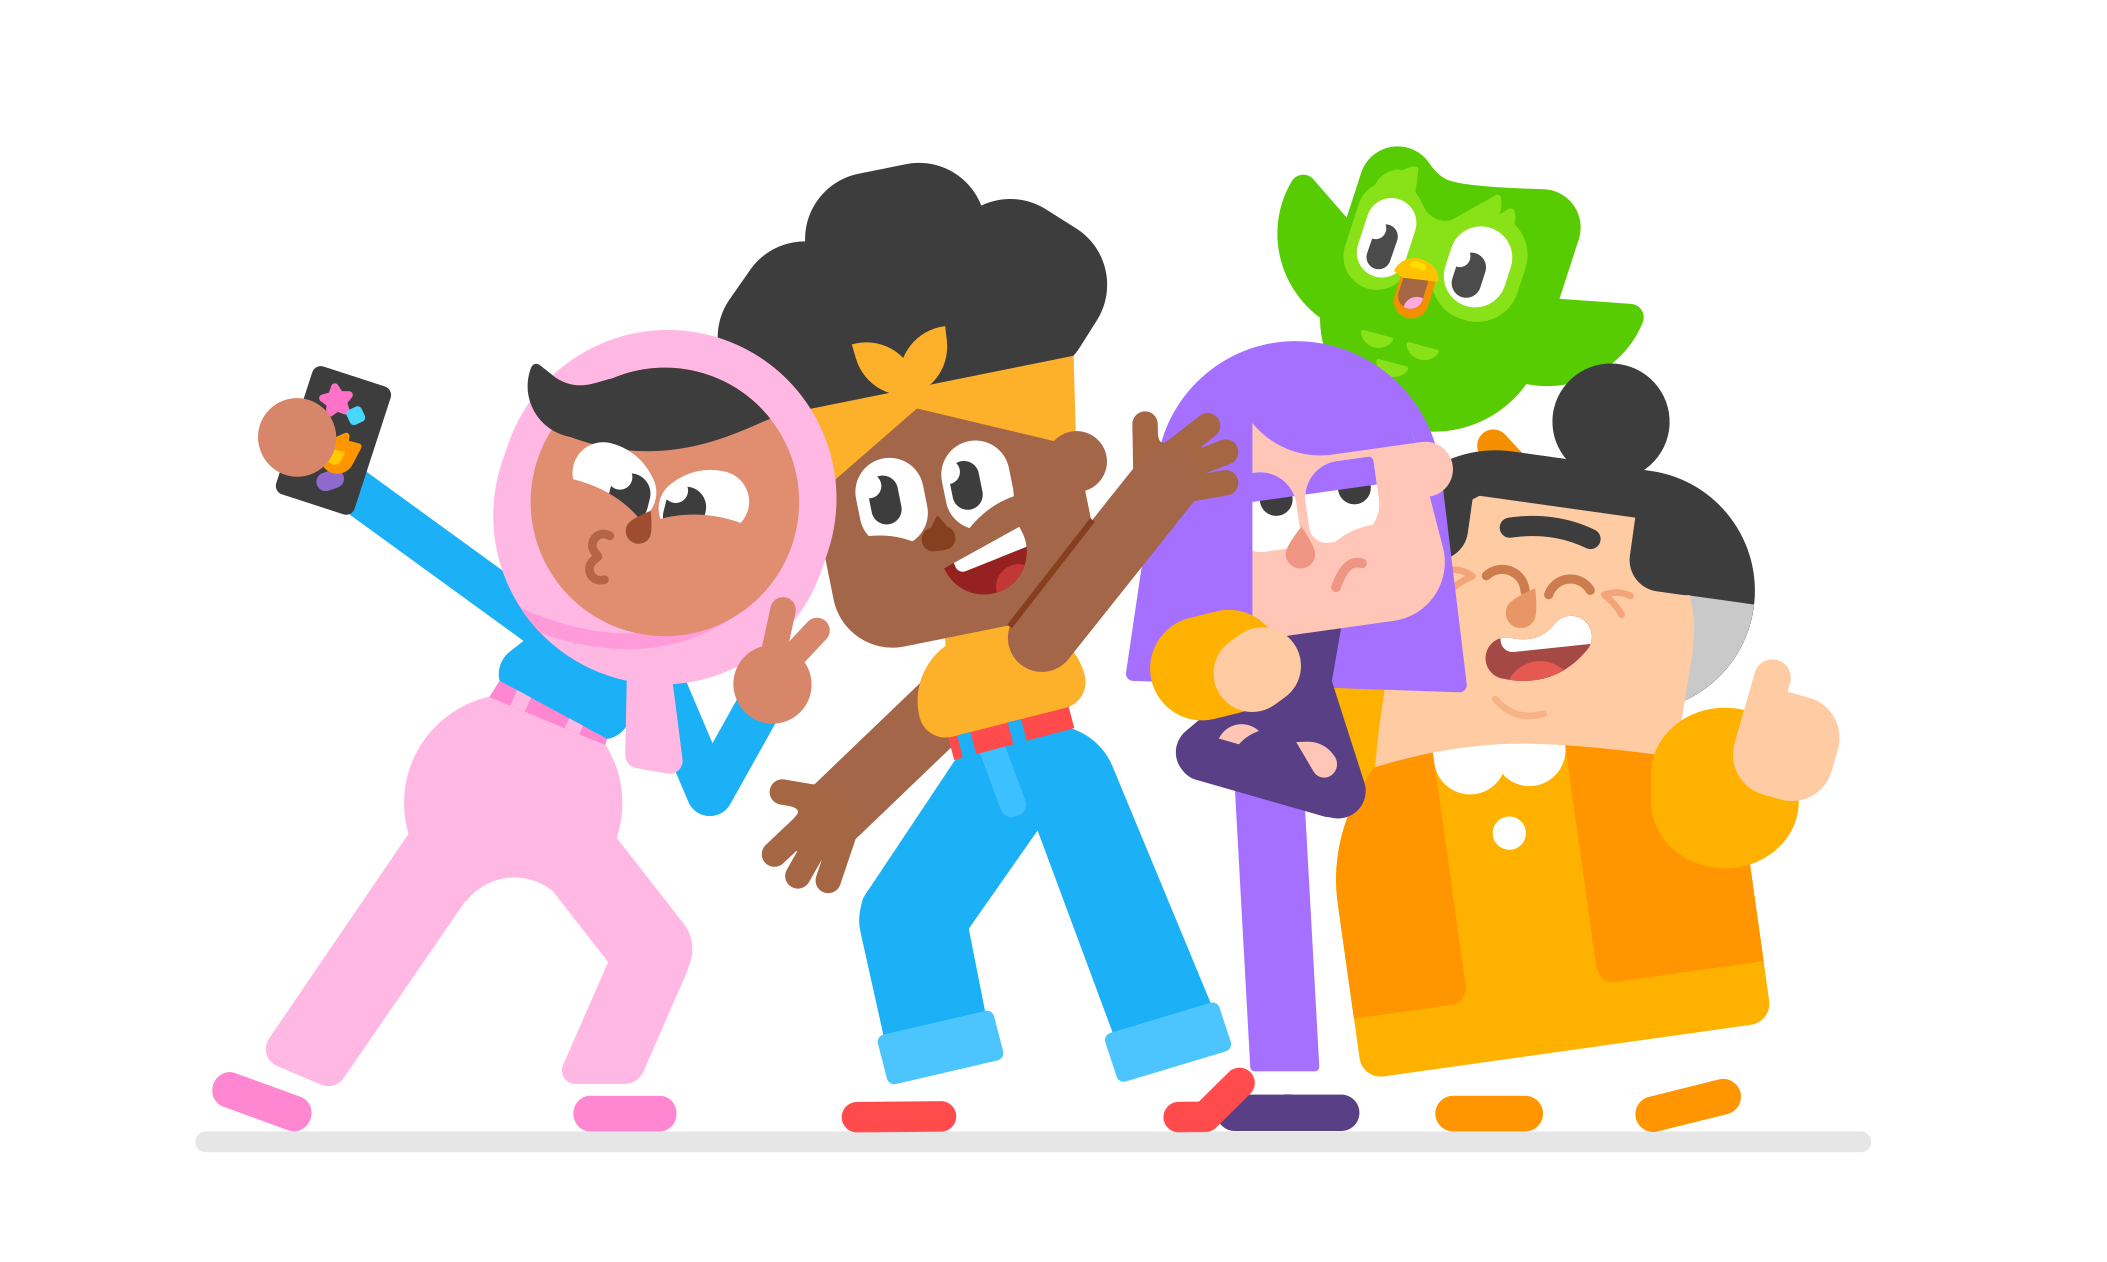 Ilustração dos personagens do Duolingo Zari, Bia, Lili, Lucy e a coruja Duo tirando uma selfie.